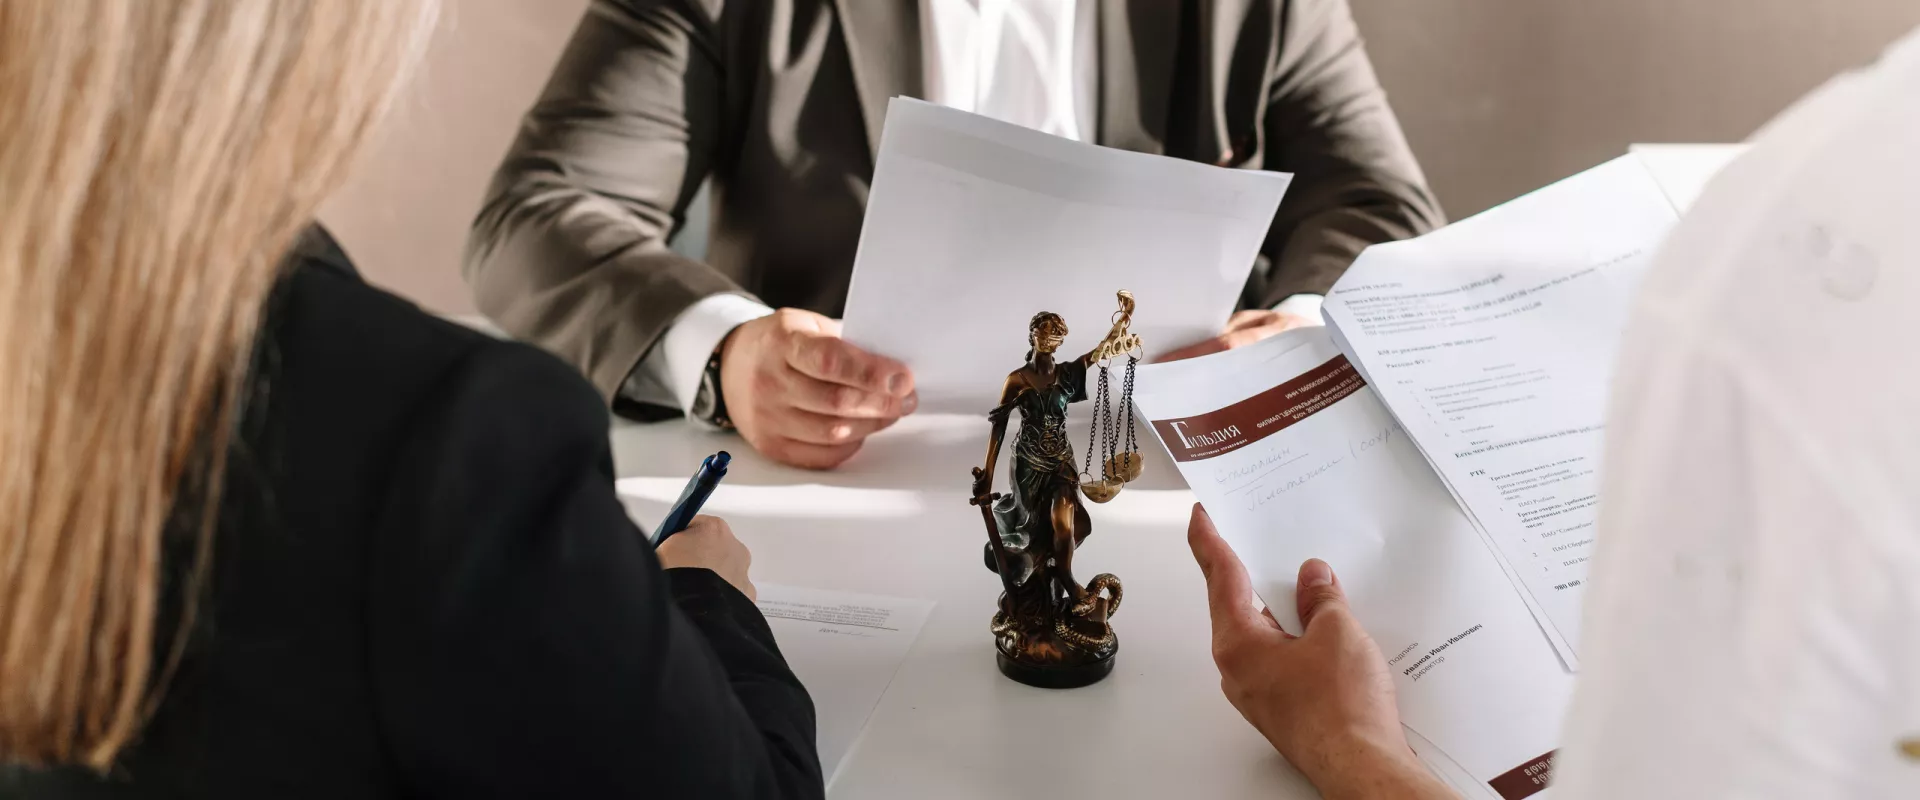 Повышение уровня профессиональной подготовки арбитражных управляющих